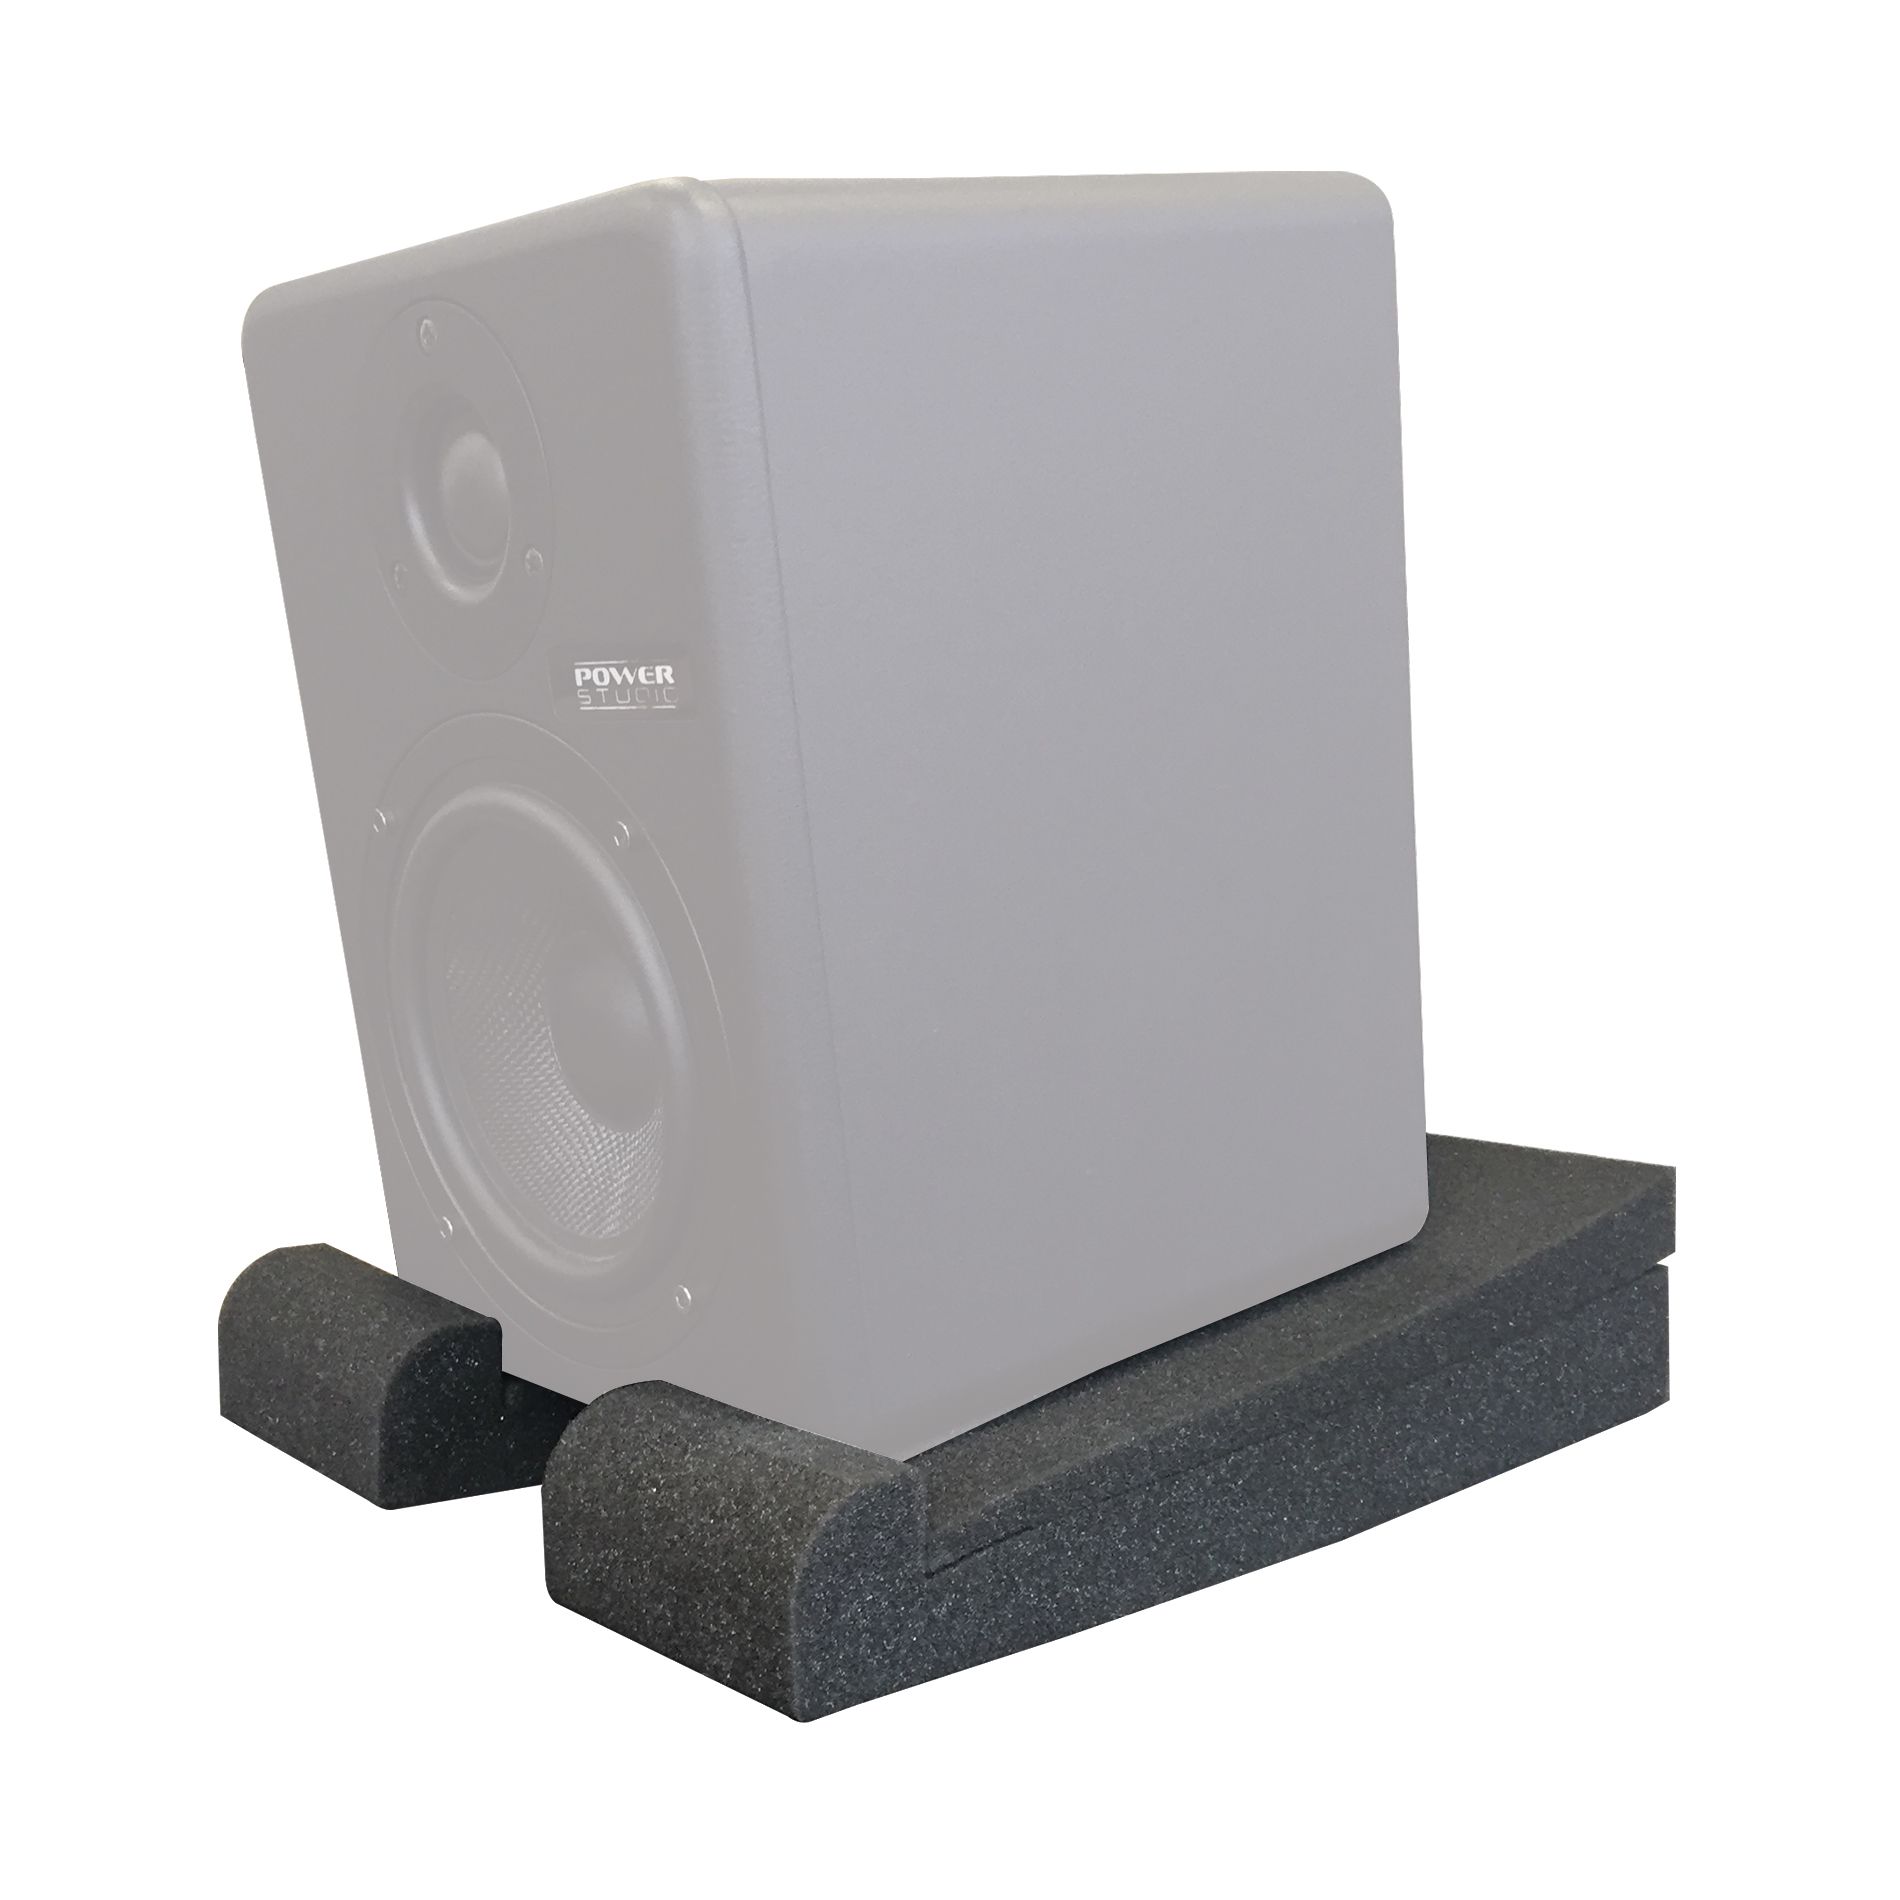 Power Studio Mf 5 - Speakers pads - Variation 2